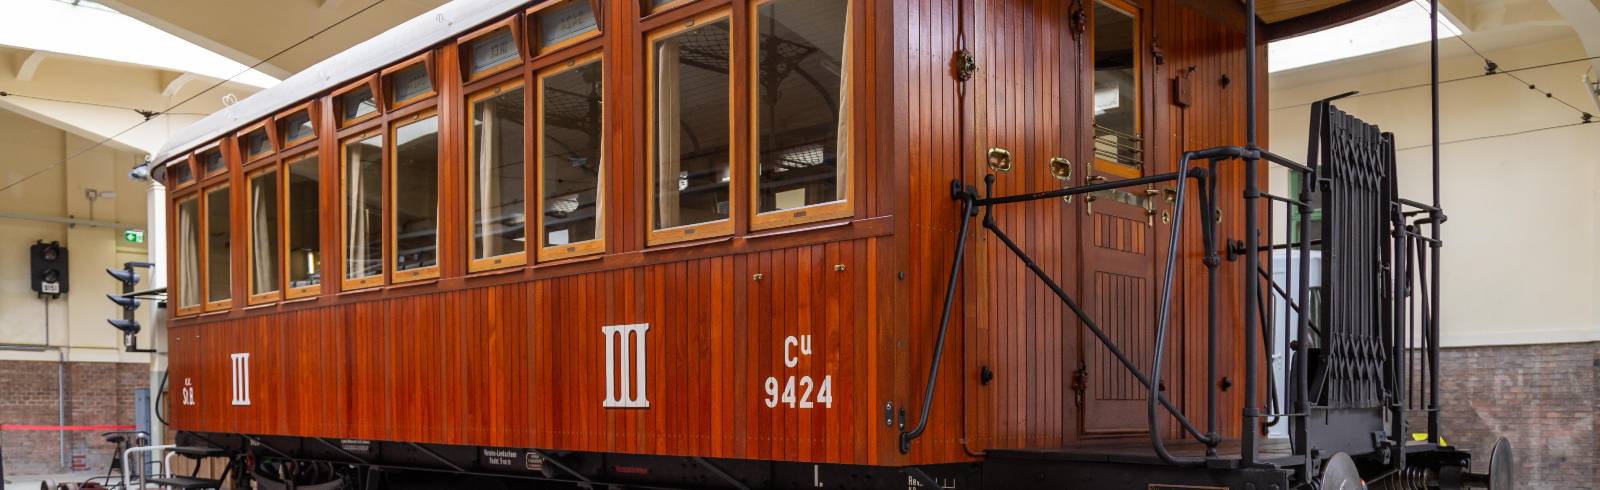 Bezirksflash: 123-jährige Bahn im Verkehrsmuseum